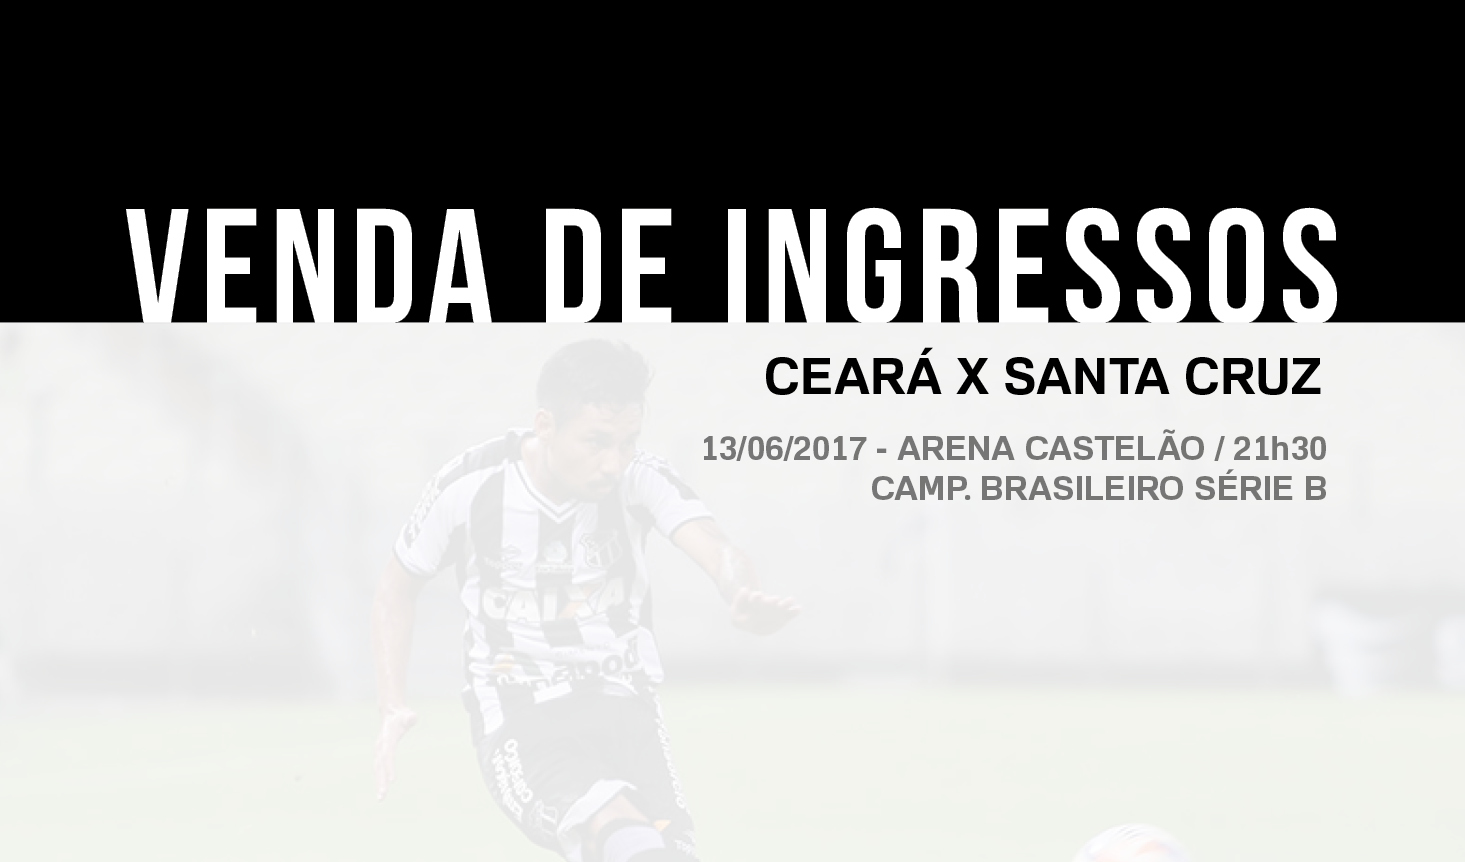 Venda de ingressos para Ceará x Santa Cruz começa nesse sábado